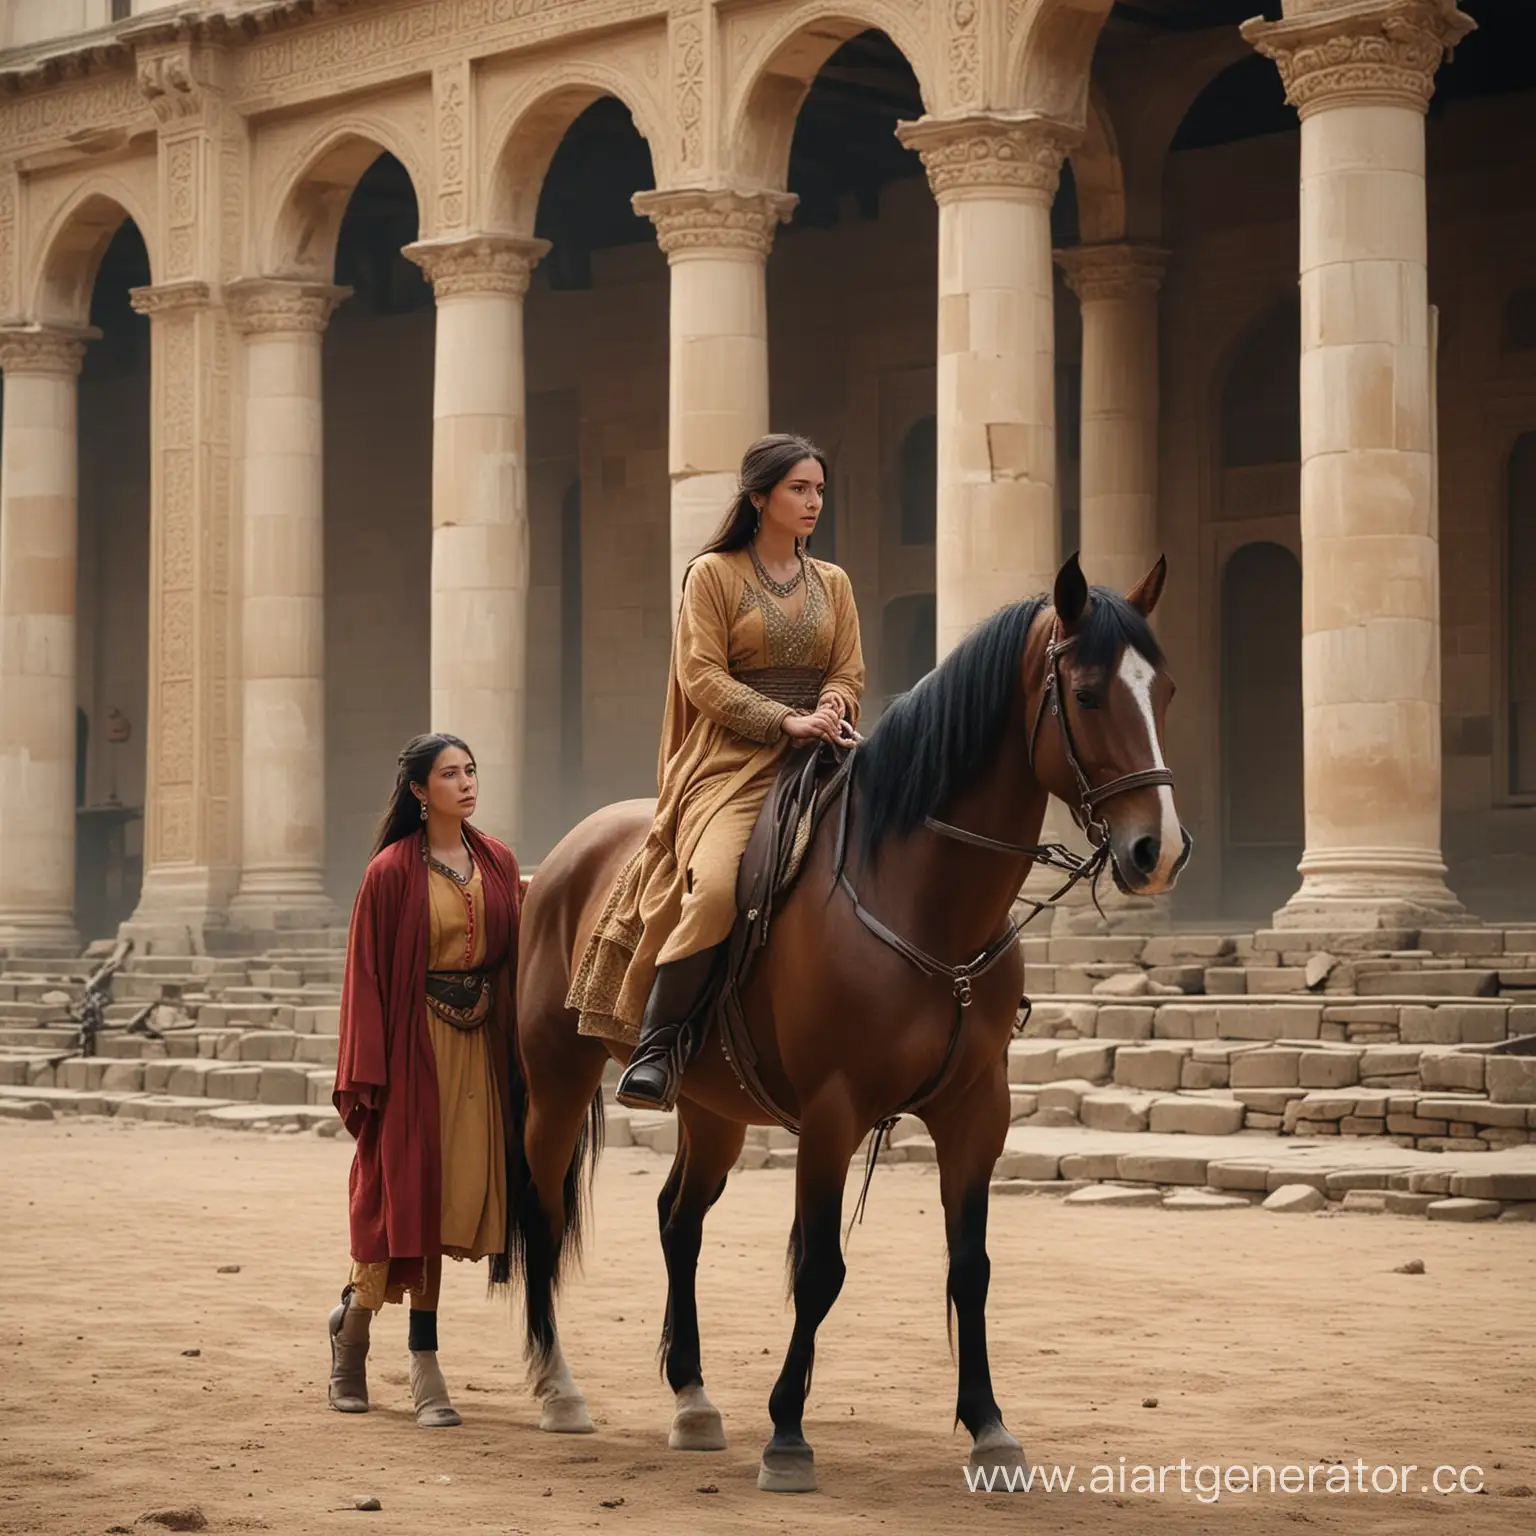 Женщина восточной внешности сбегает верхом на лошади из дворца мужчины, он очень расстроен из-за этого, потому что любит её, а она его нет